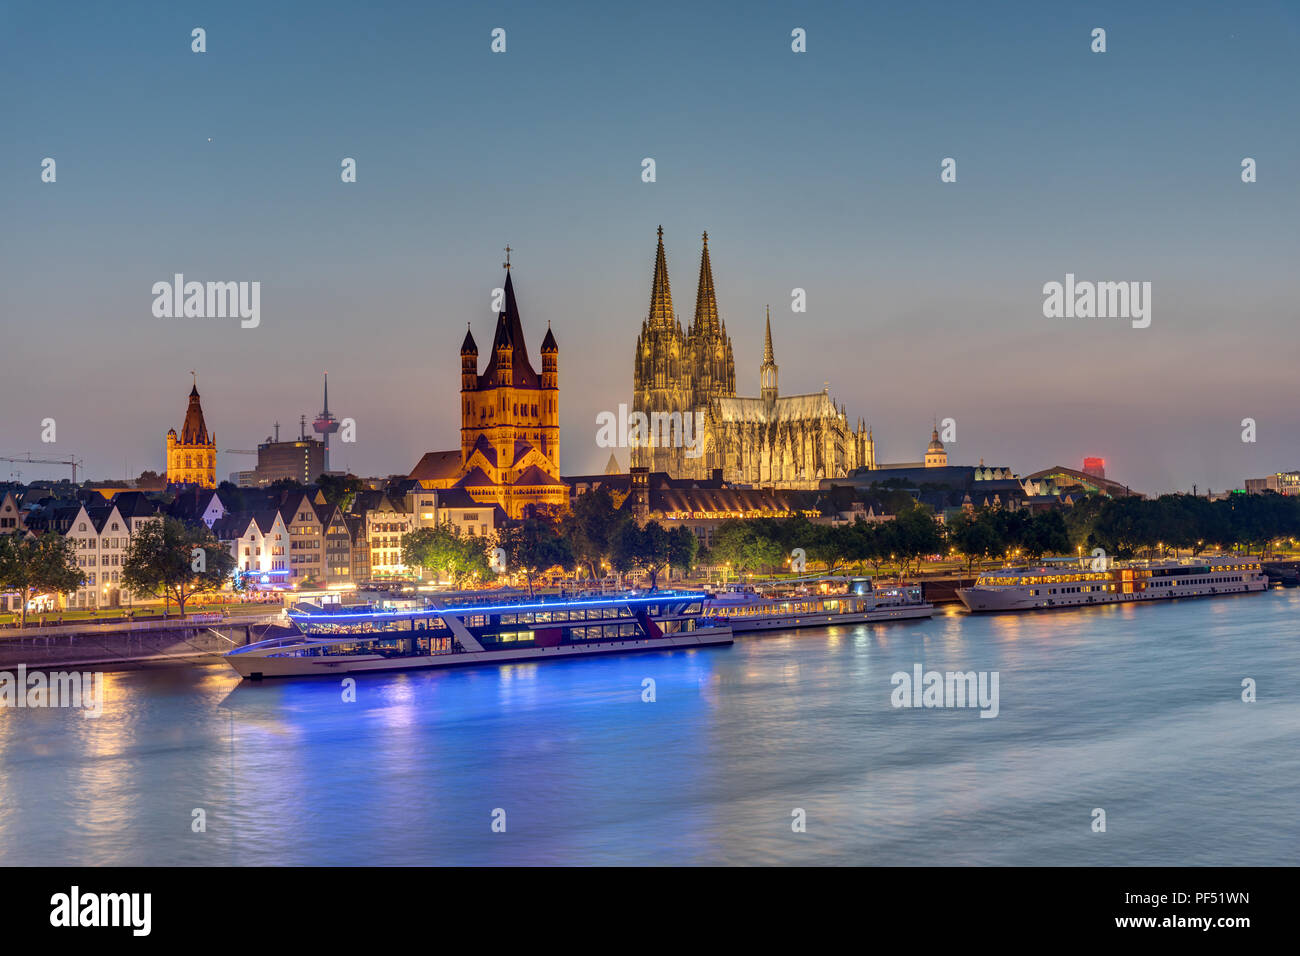 La célèbre skyline de Cologne avec le Rhin et la cathédrale au crépuscule Banque D'Images